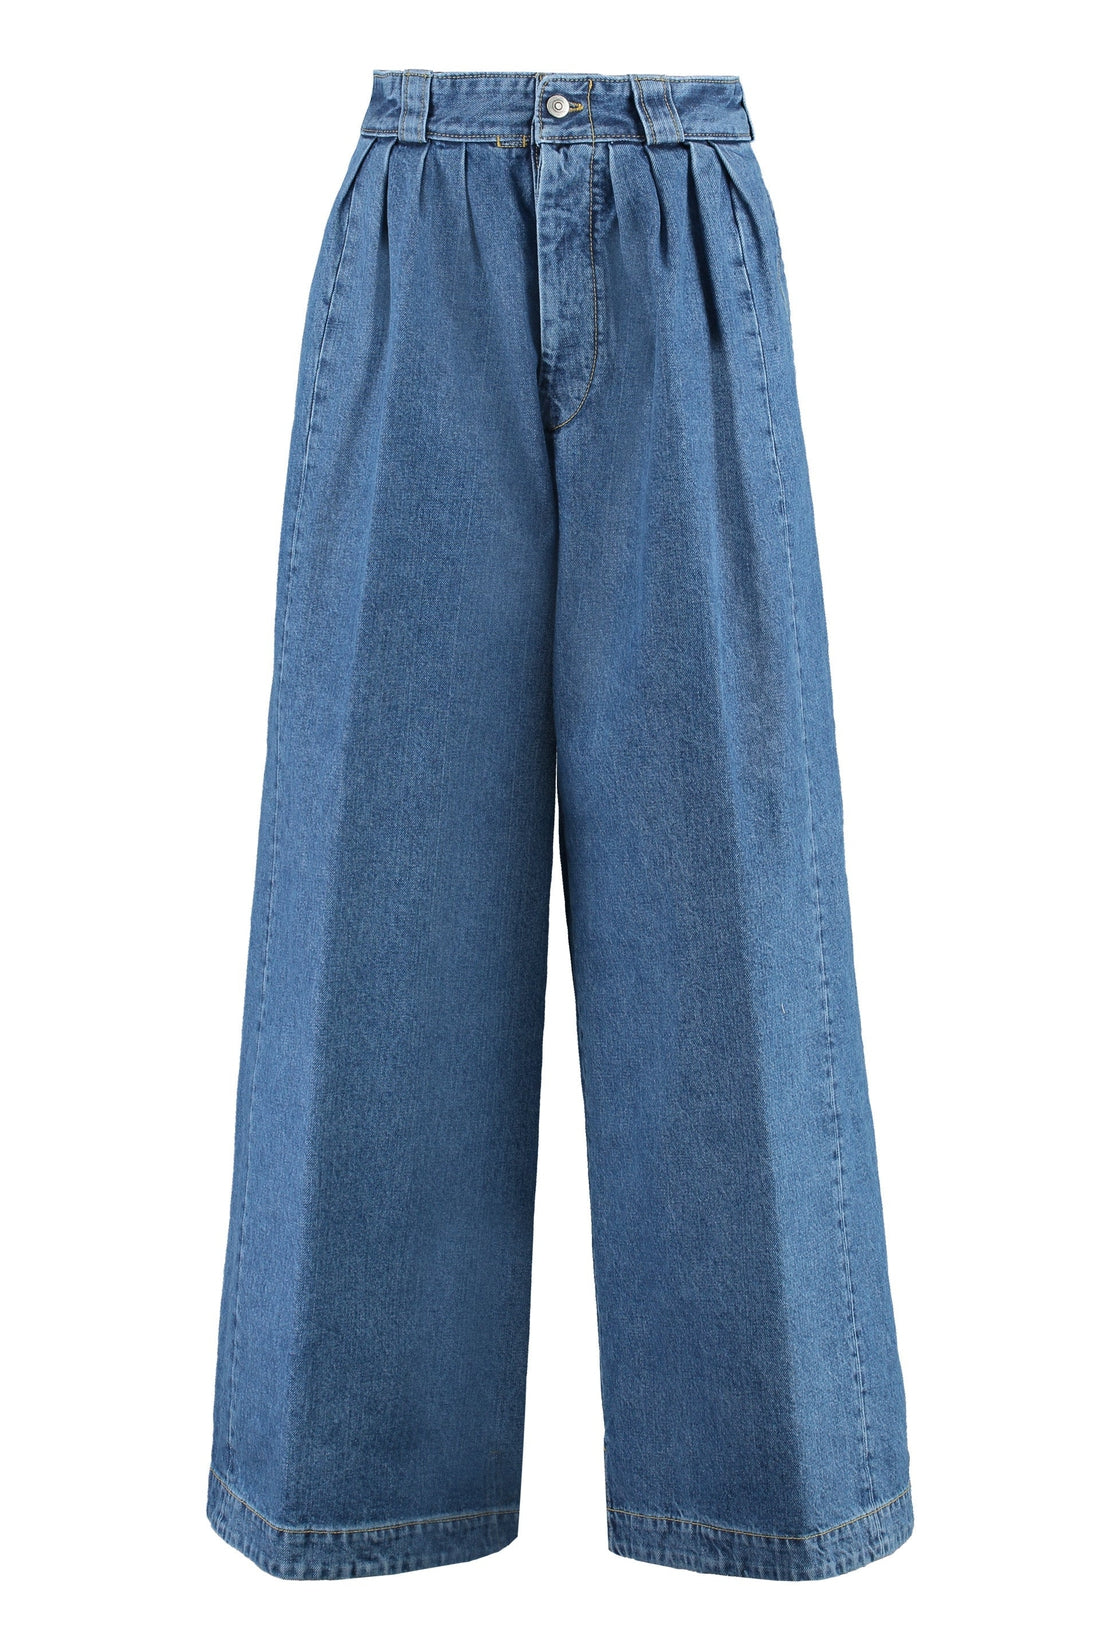 Maison Margiela-OUTLET-SALE-Wide leg jeans-ARCHIVIST